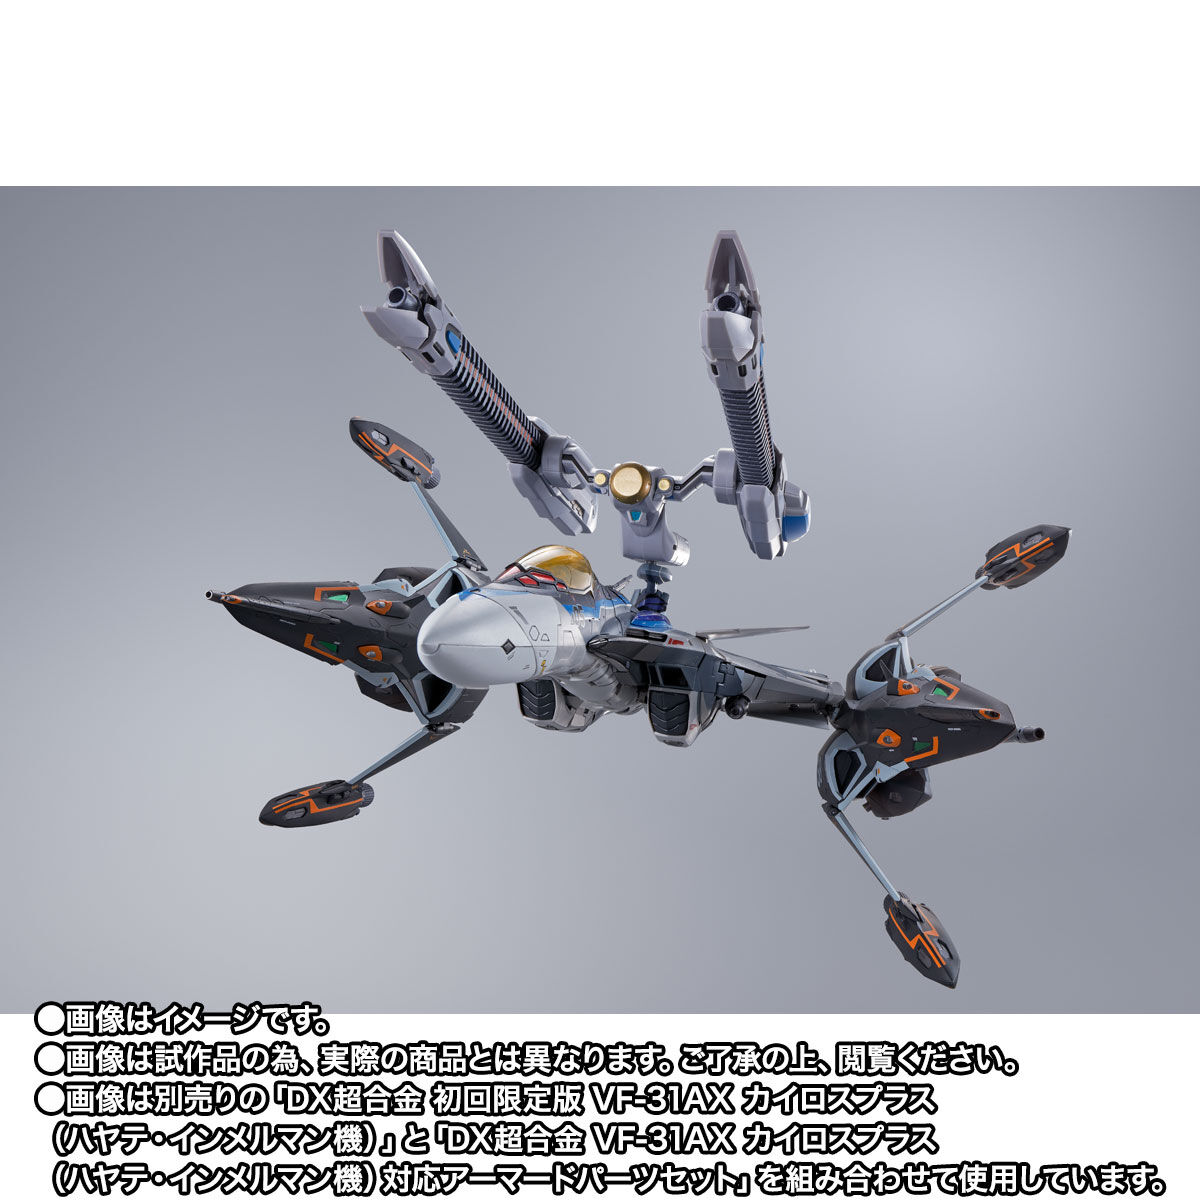 【限定販売】DX超合金『VF-31AX カイロスプラス（ハヤテ・インメルマン機）対応 スーパーゴーストセット』マクロスΔ 可動フィギュア-007